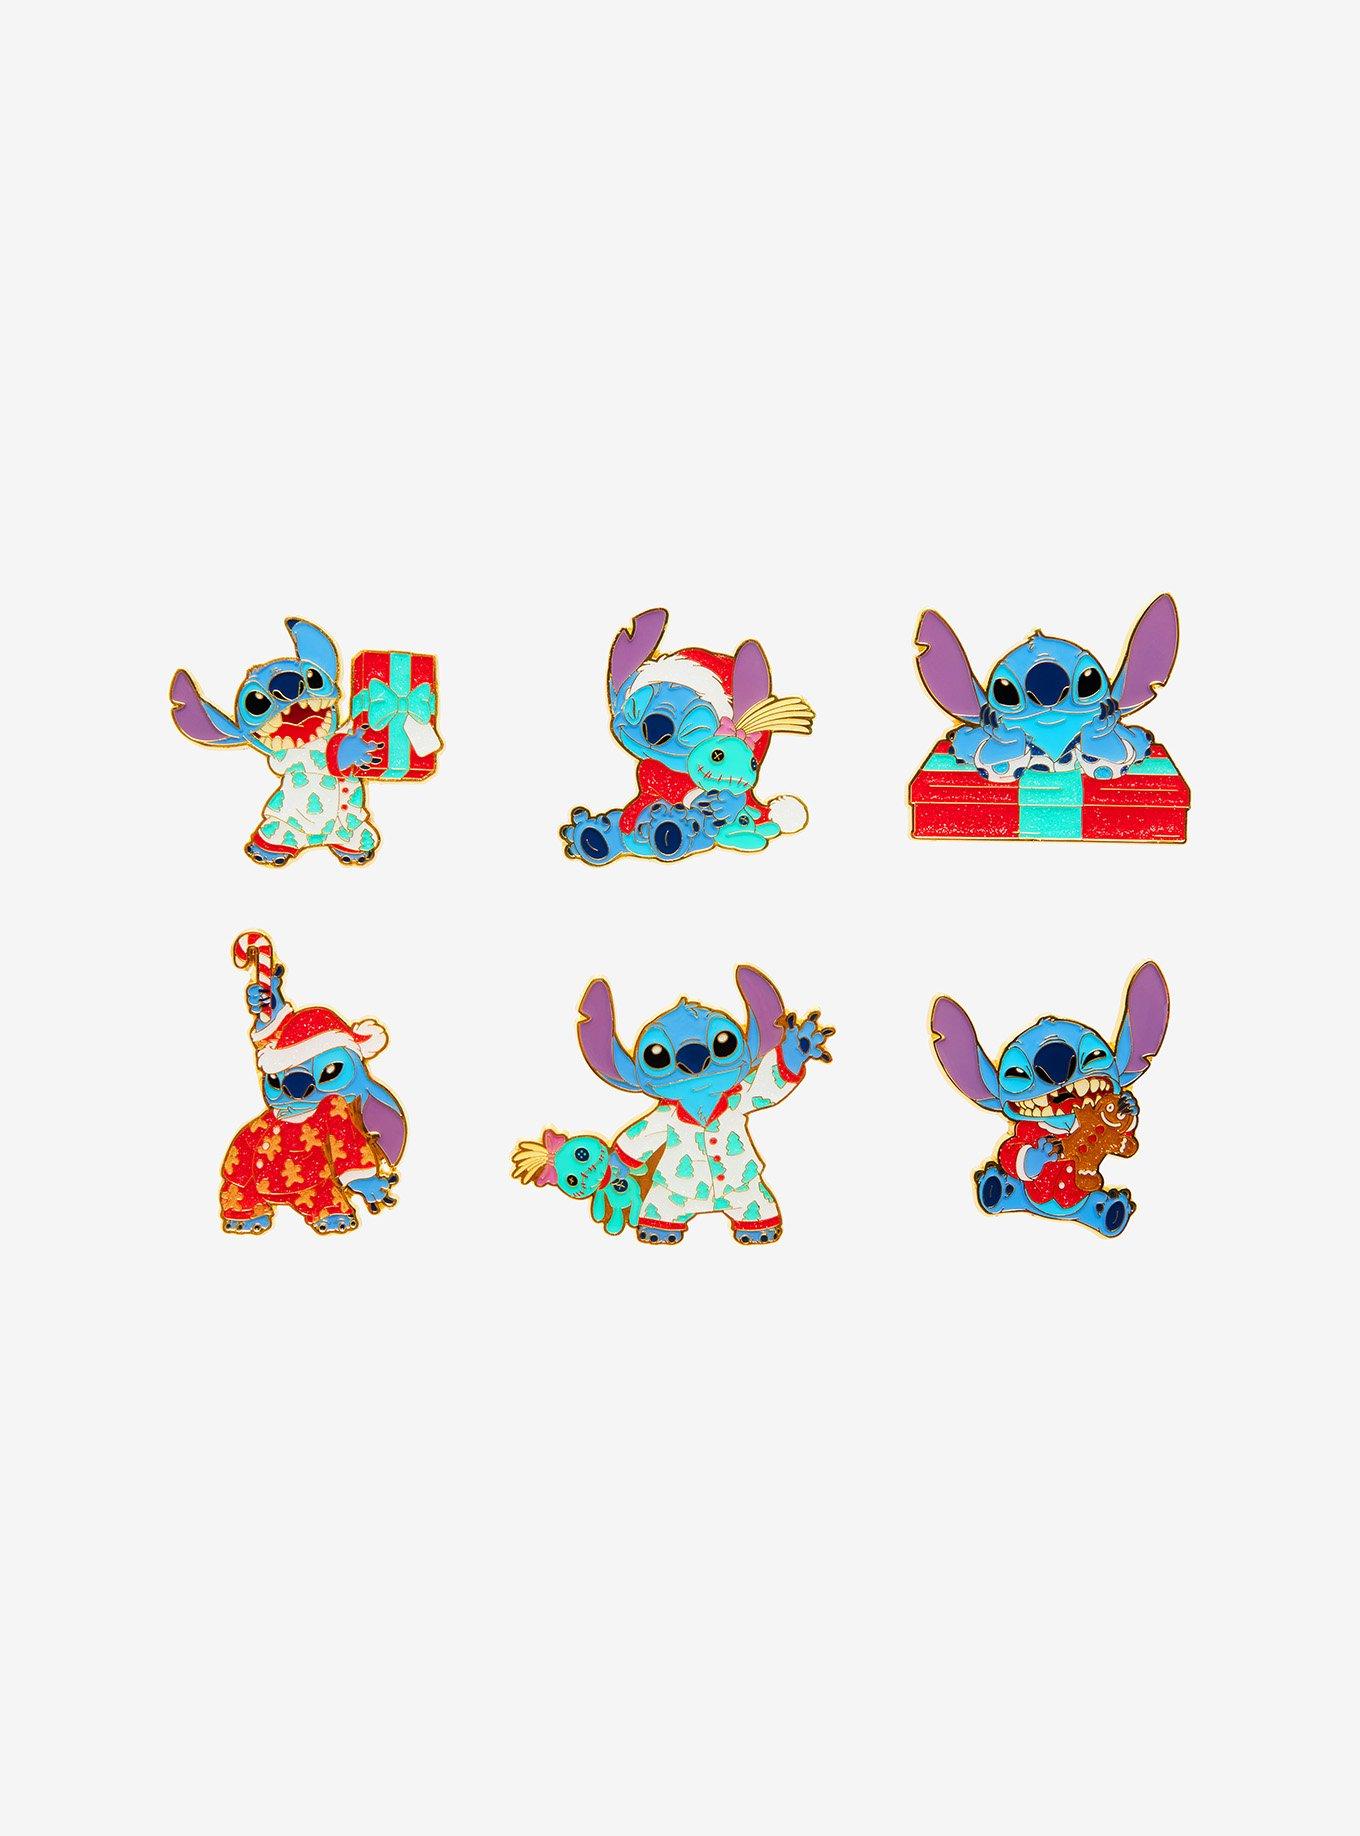 Hot Topic Disney Lilo & Stitch Beach Stitch Blind Box Figure